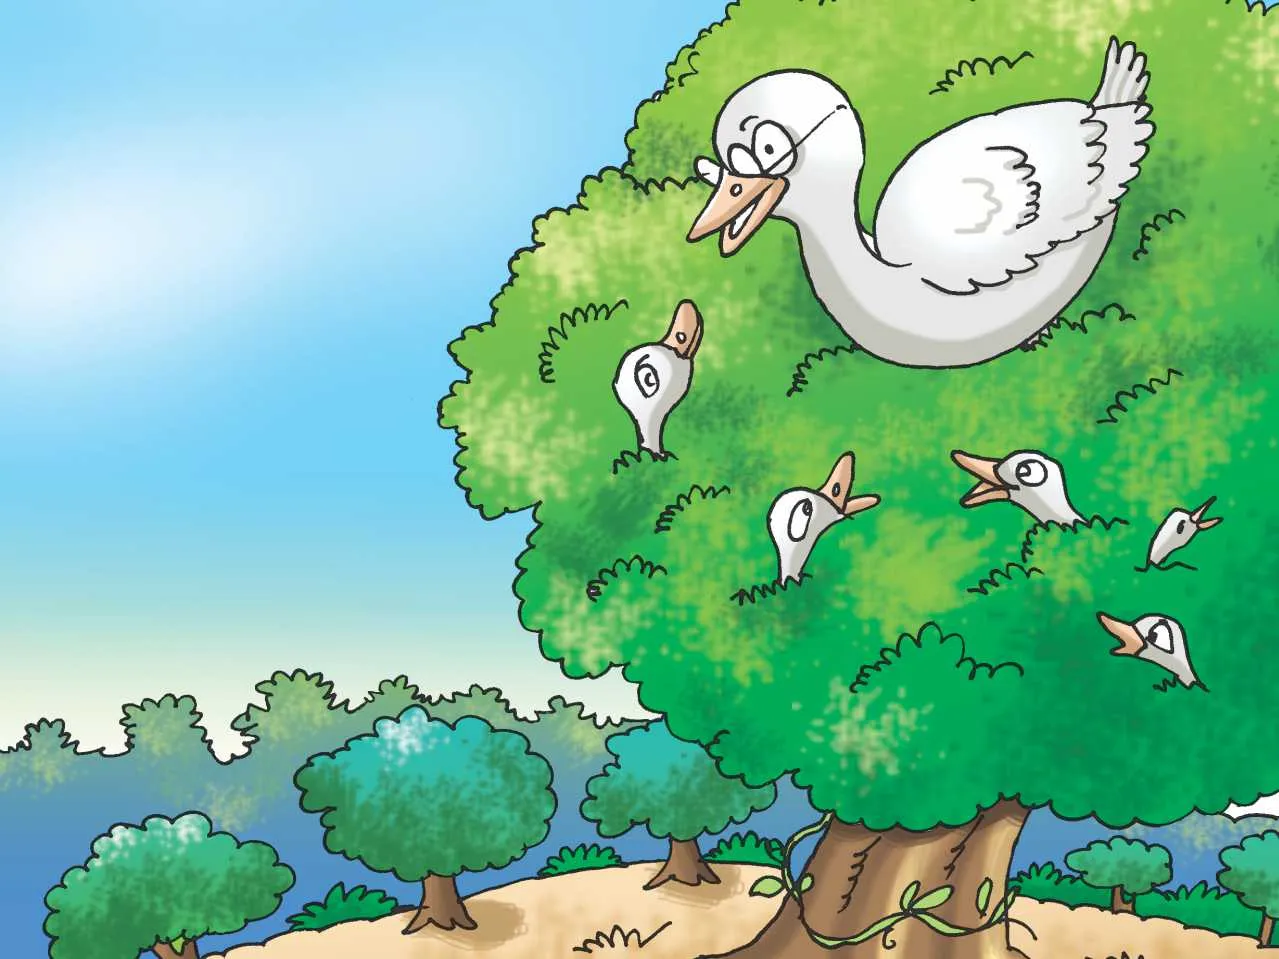 Swan on tree cartoon image